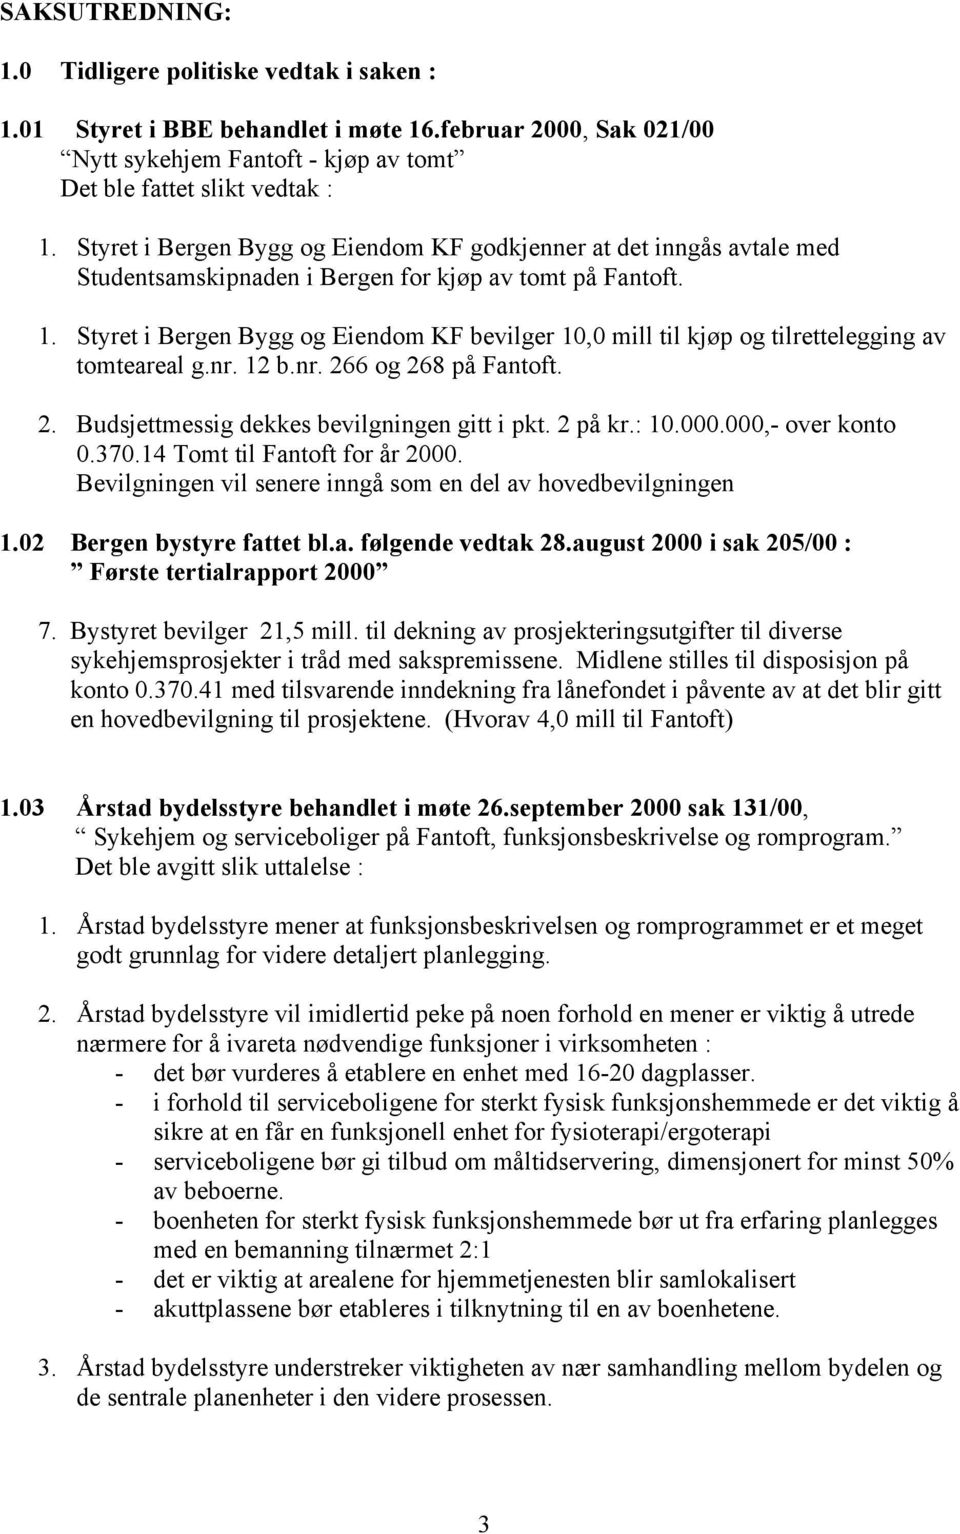 Styret i Bergen Bygg og Eiendom KF bevilger 10,0 mill til kjøp og tilrettelegging av tomteareal g.nr. 12 b.nr. 266 og 268 på Fantoft. 2. Budsjettmessig dekkes bevilgningen gitt i pkt. 2 på kr.: 10.